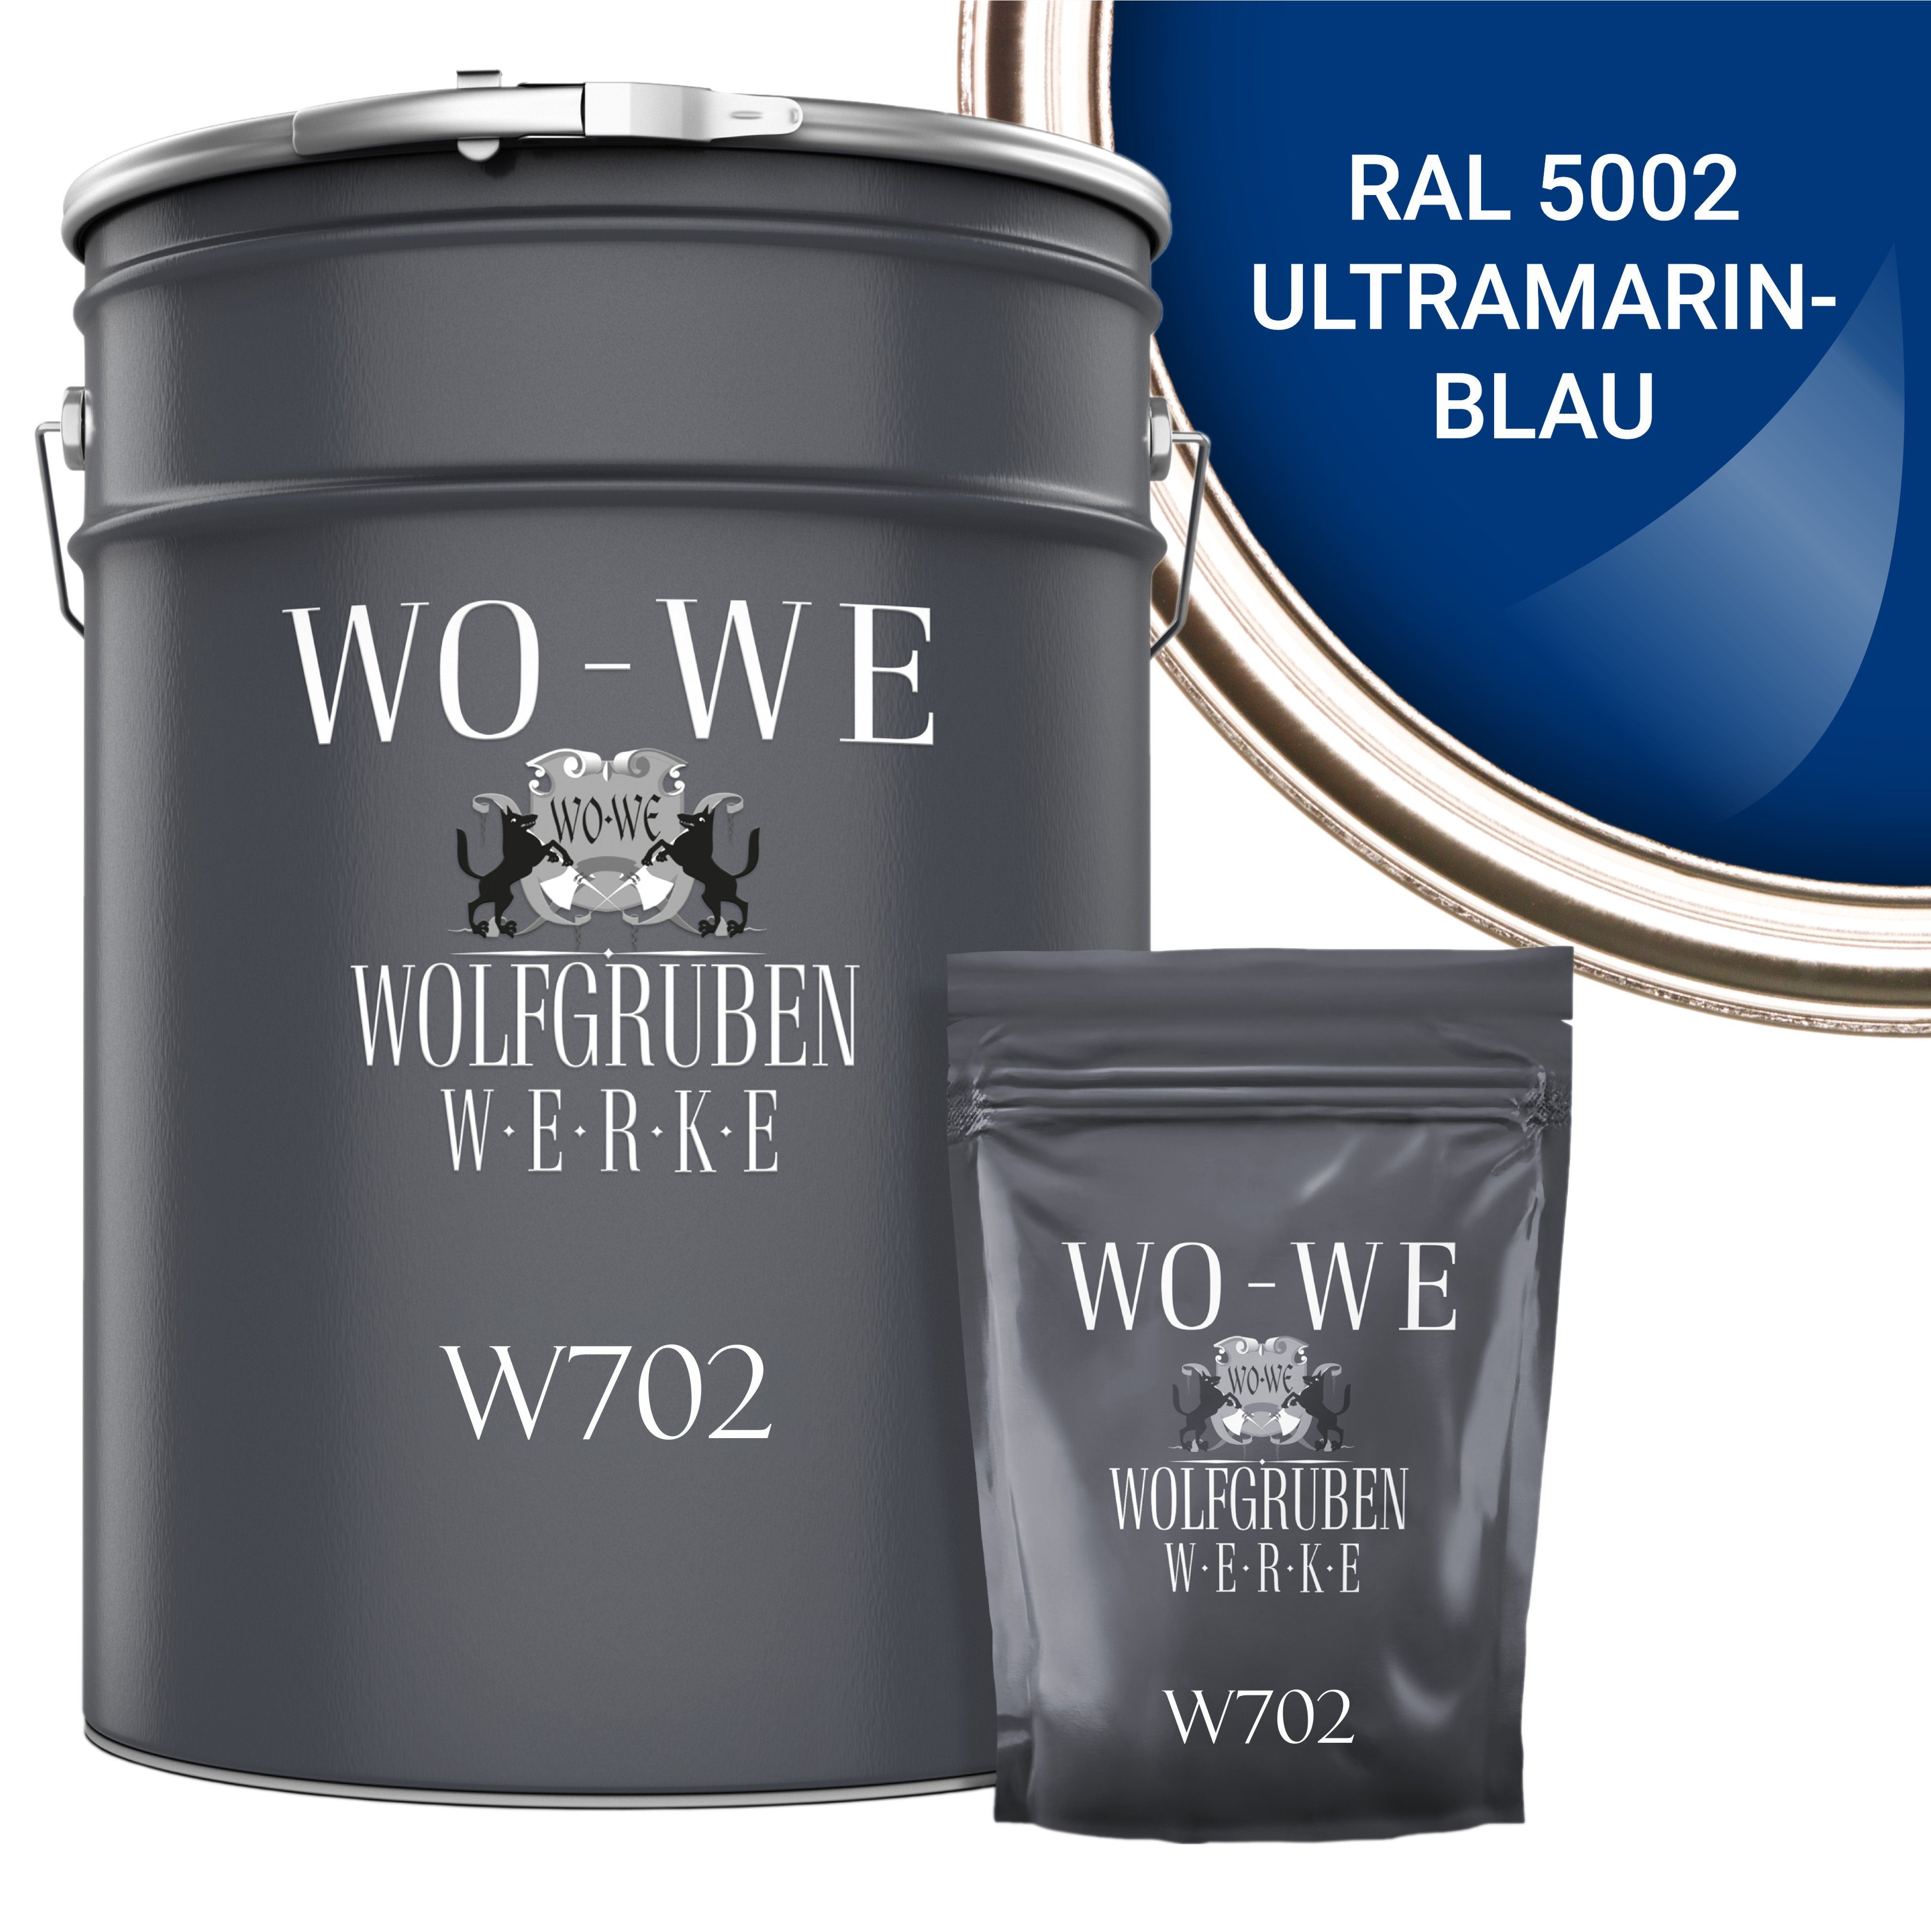 W702, Bodenversiegelung RAL Ultramarinblau 5002 Epoxidharz 2,5-20Kg, Seidenglänzend, WO-WE Garagenfarbe 2K Bodenbeschichtung